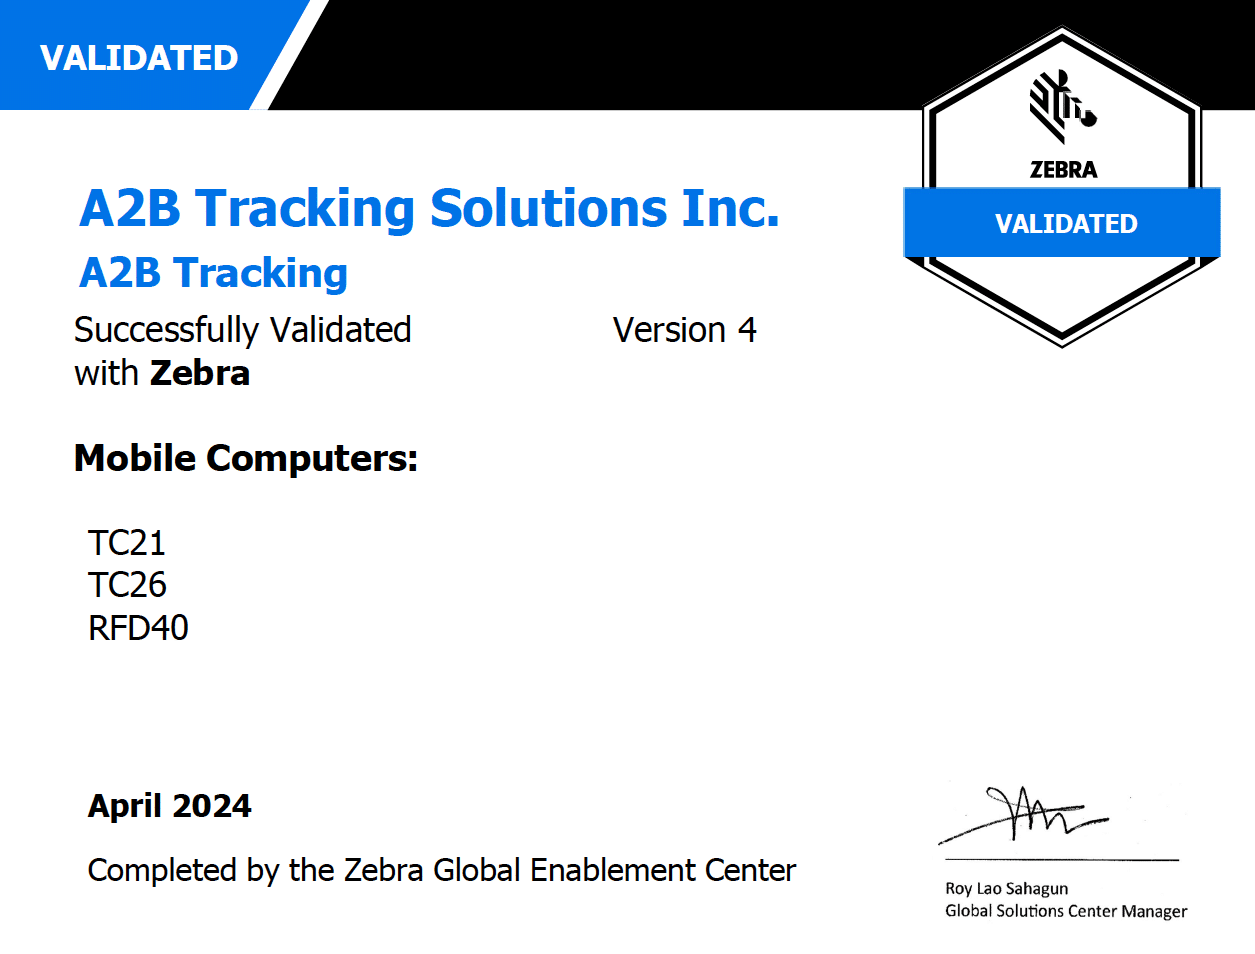 Zebra Validated Certificate